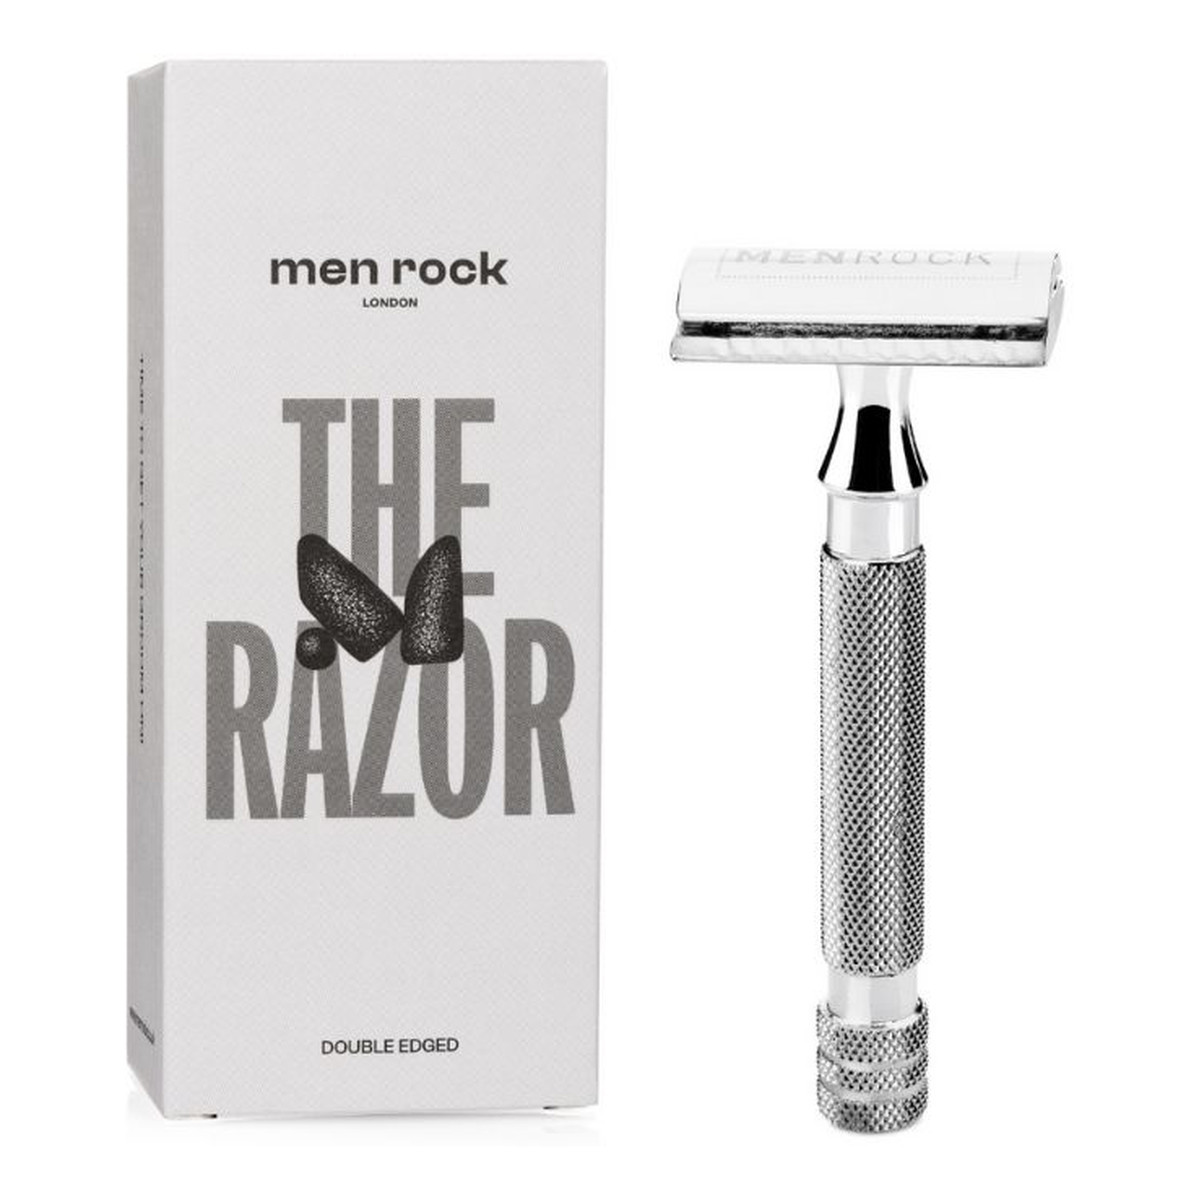 Menrock The razor double edged maszynka do golenia dla mężczyzn